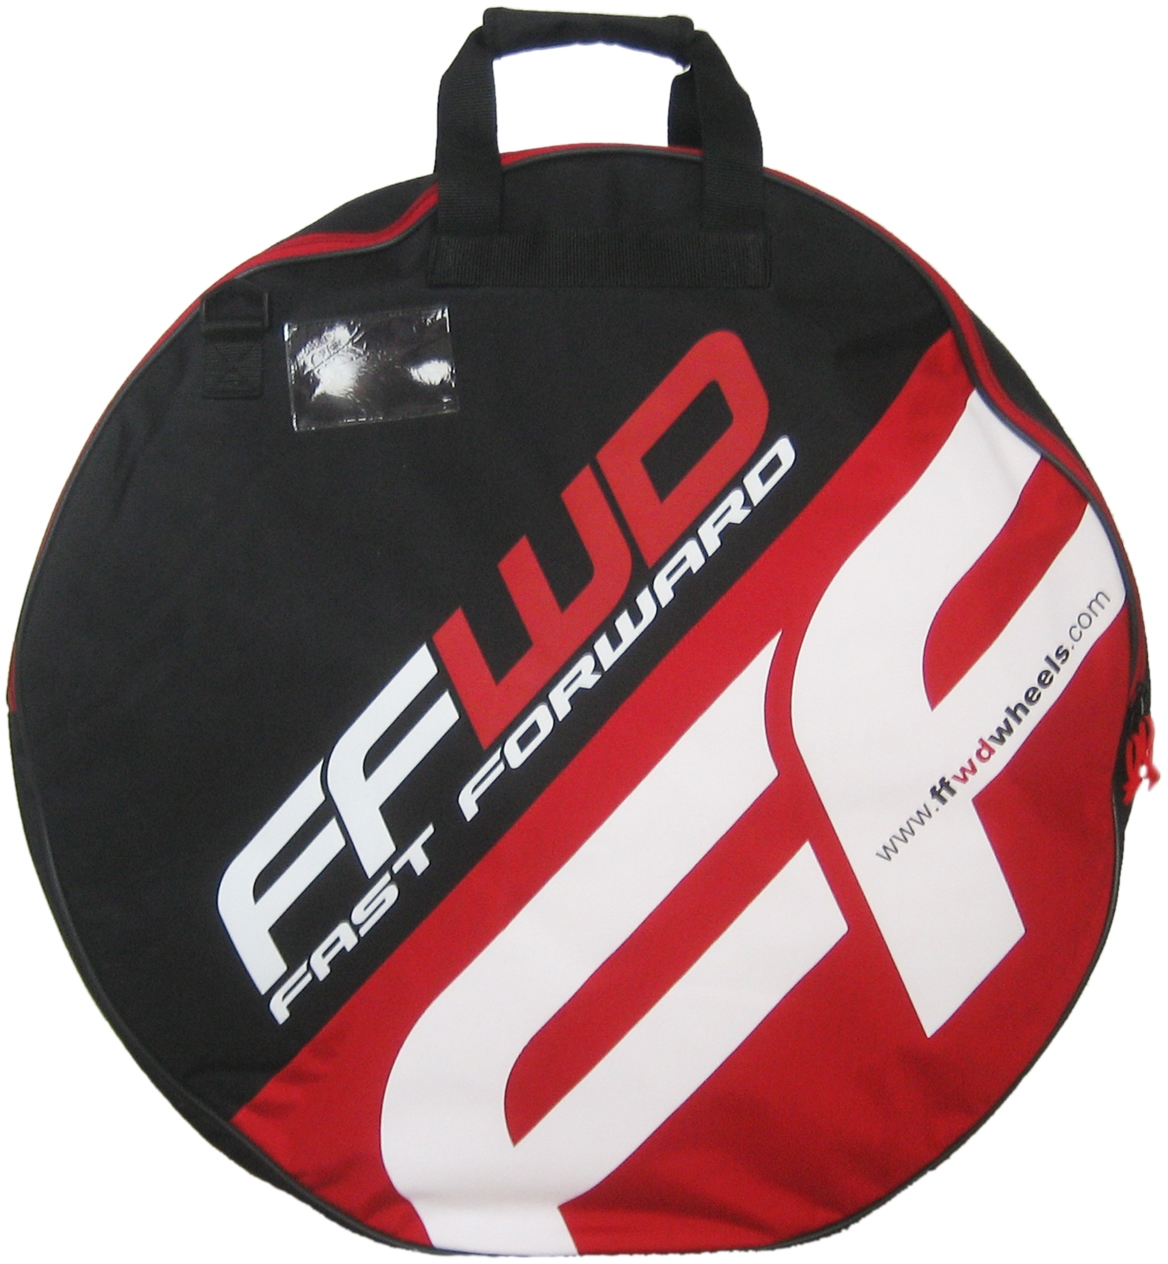 Fast Forward F6R Carbon Clincher Wielset Wit Logo Fast Forward Naaf